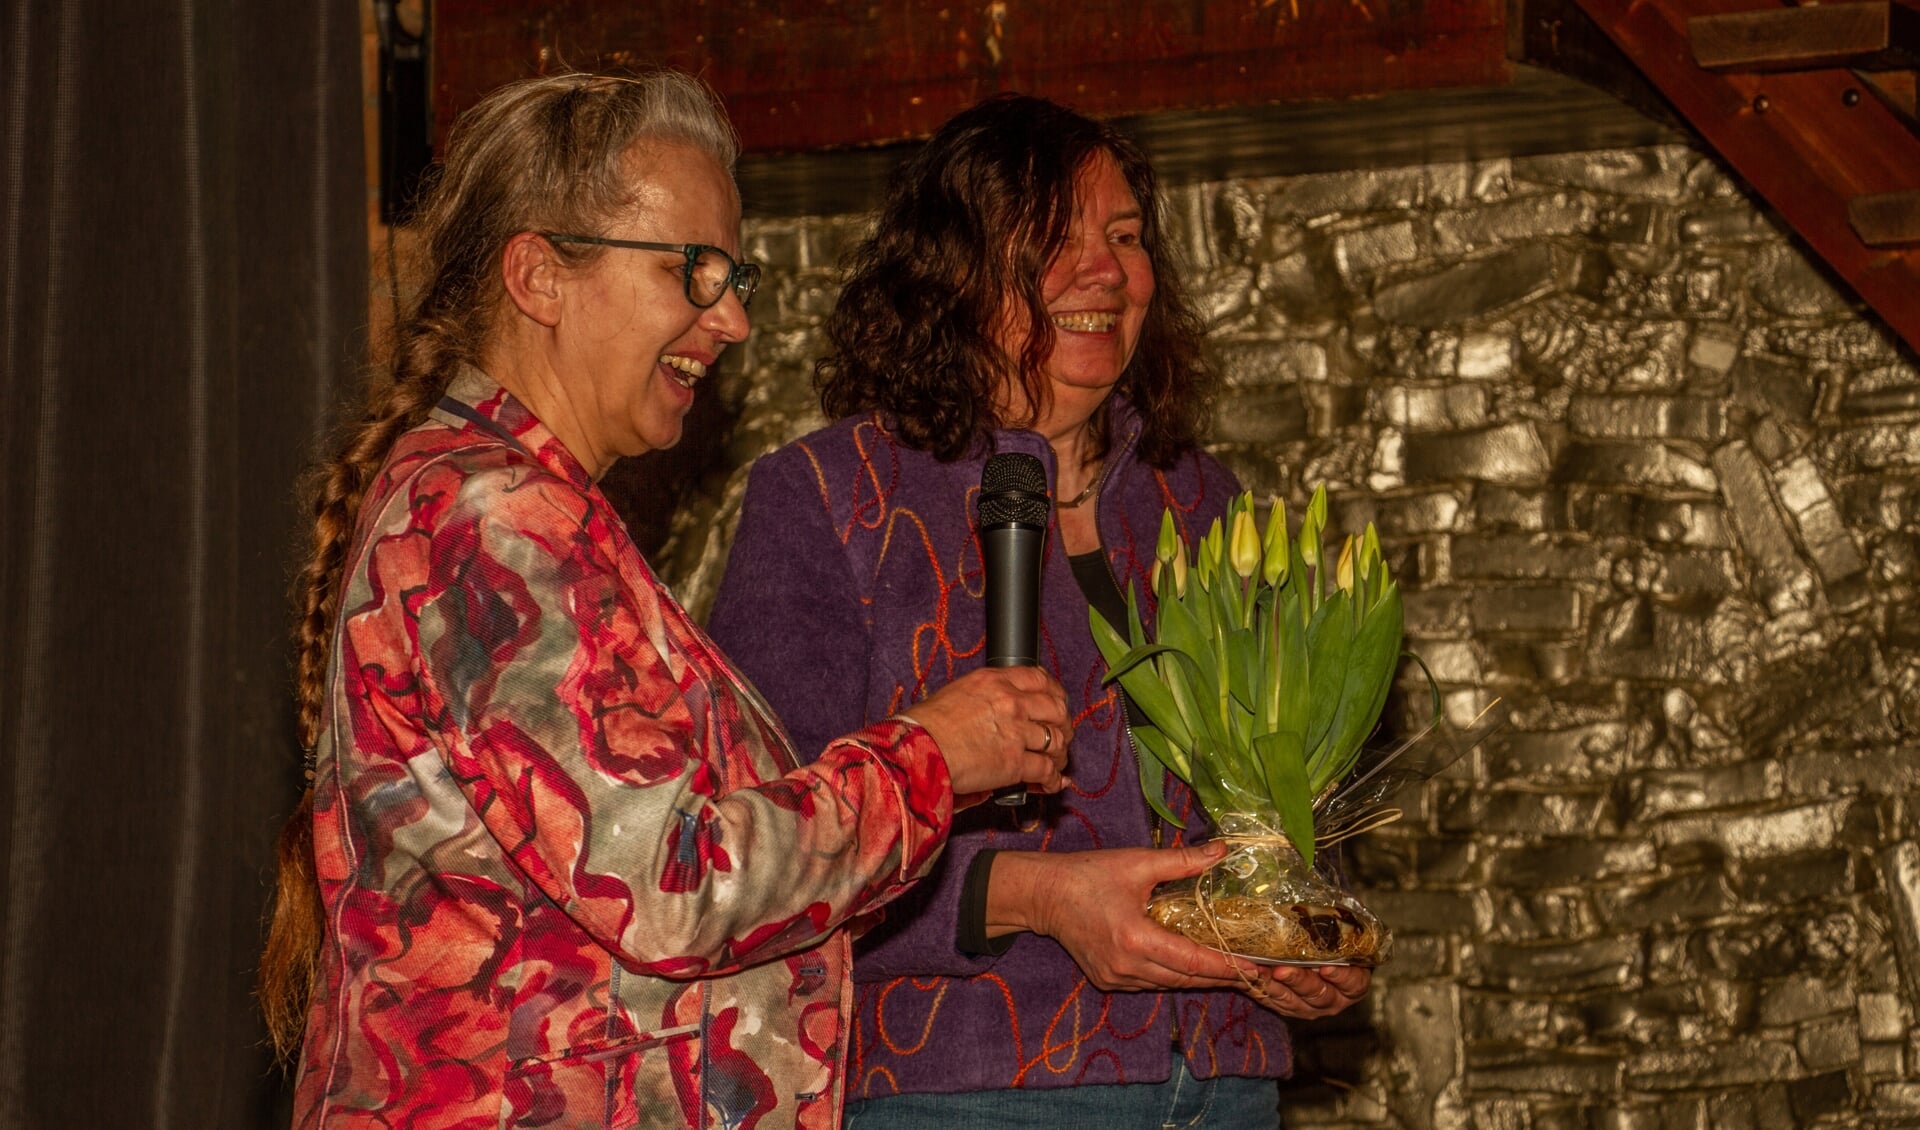 Schrijfster Alice Garritsen krijgt van Alien Maalderink een schoof tulpen. Foto: Liesbeth Spaansen